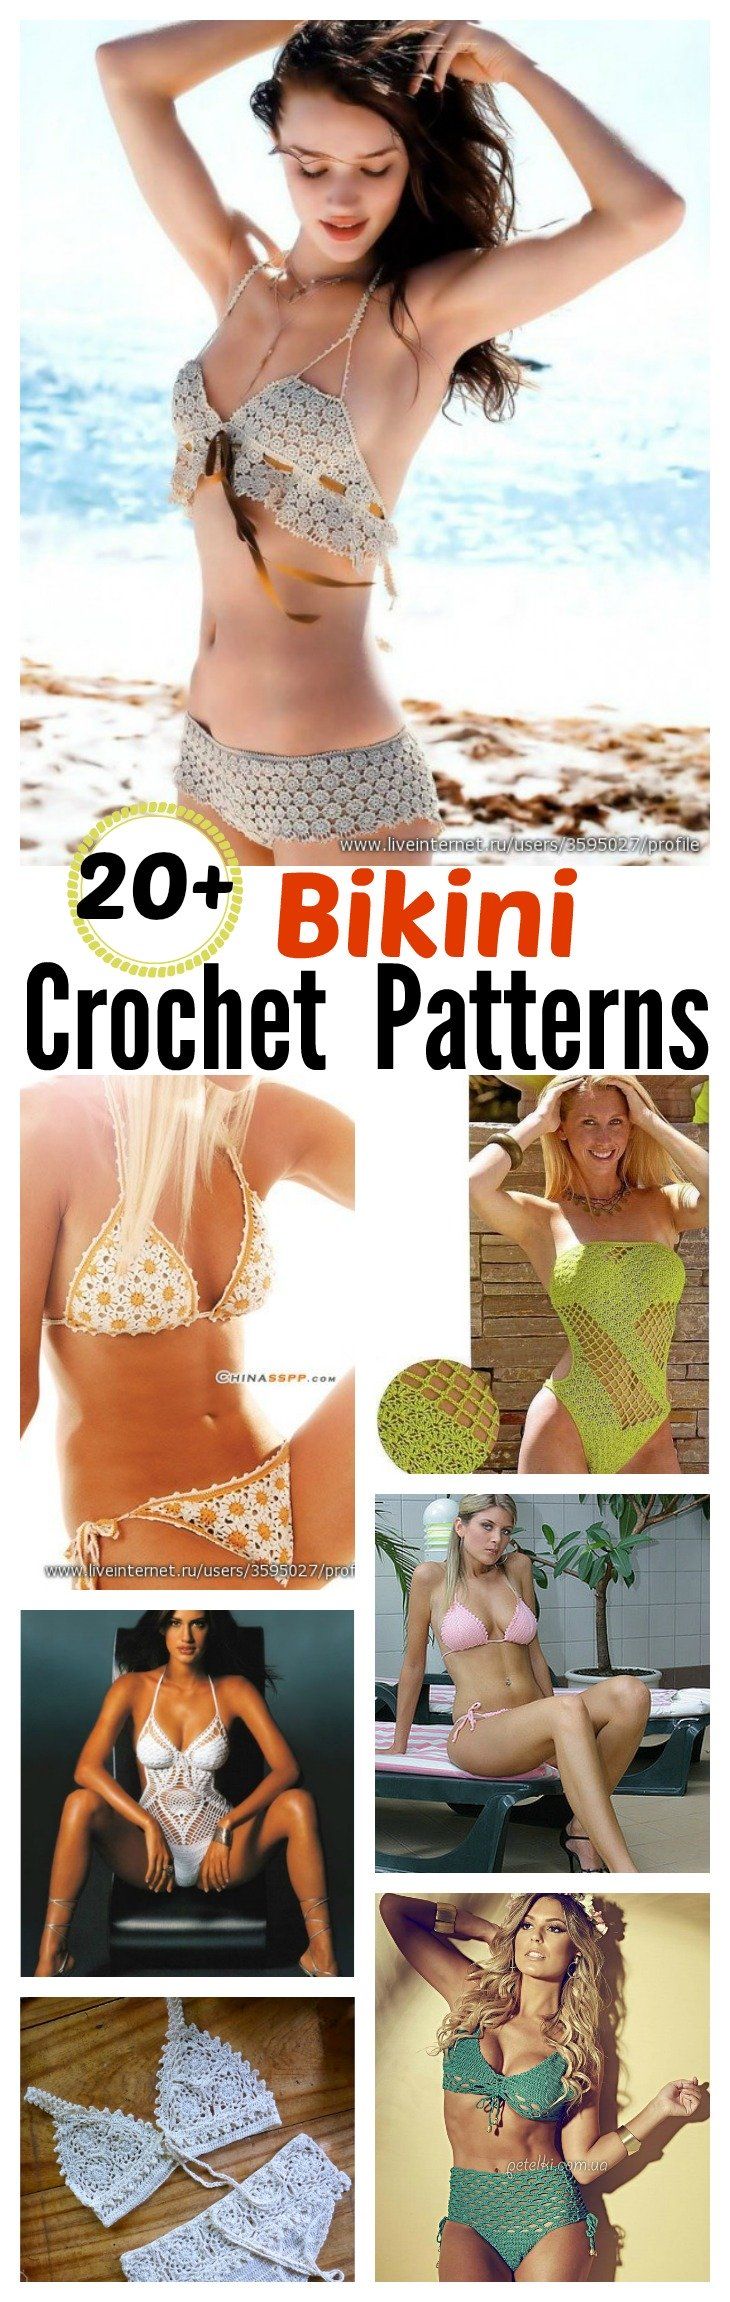 20+ Free Crochet Bikini Patterns - Page 3 of 3